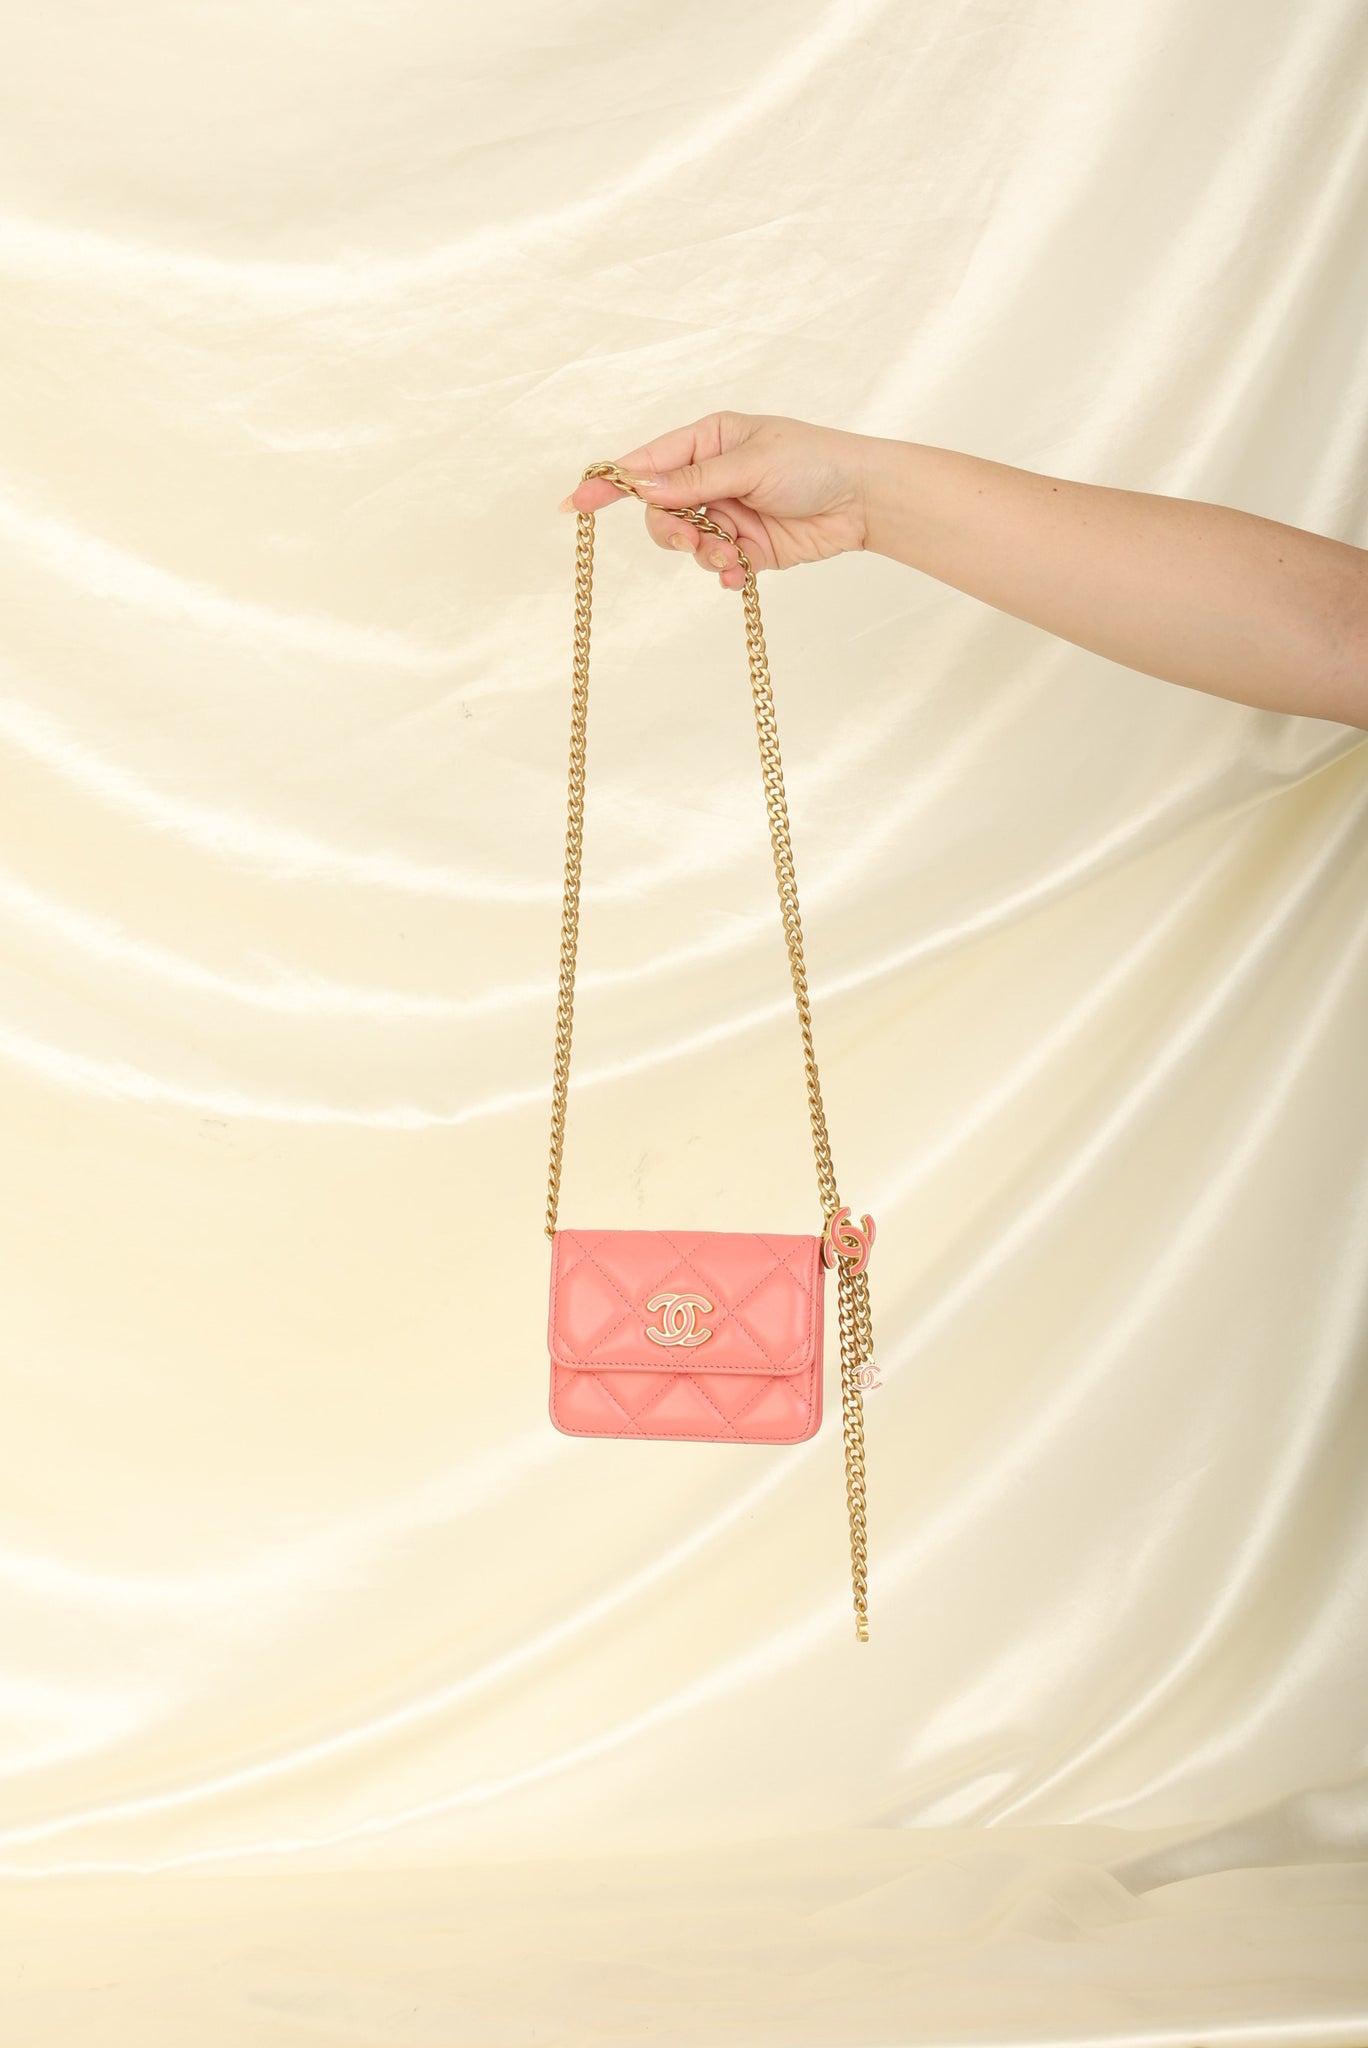 Chanel Lambskin Waist Bags & Fanny Packs for Women